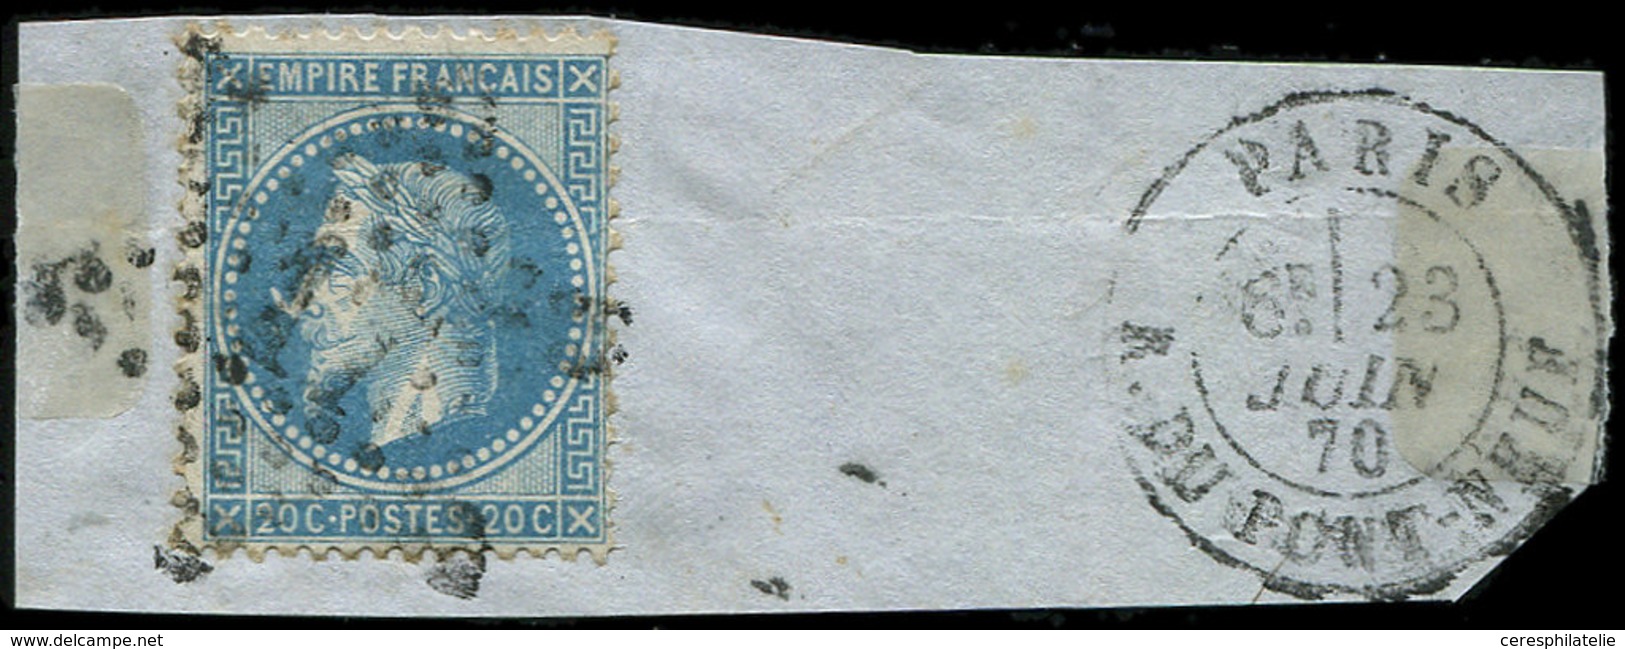 EMPIRE LAURE - 29Bb 20c. Bleu, T II, "A LA CORNE", Obl. Etoile S. Fragt, Càd PARIS 23/6/70, TB - 1863-1870 Napoleone III Con Gli Allori